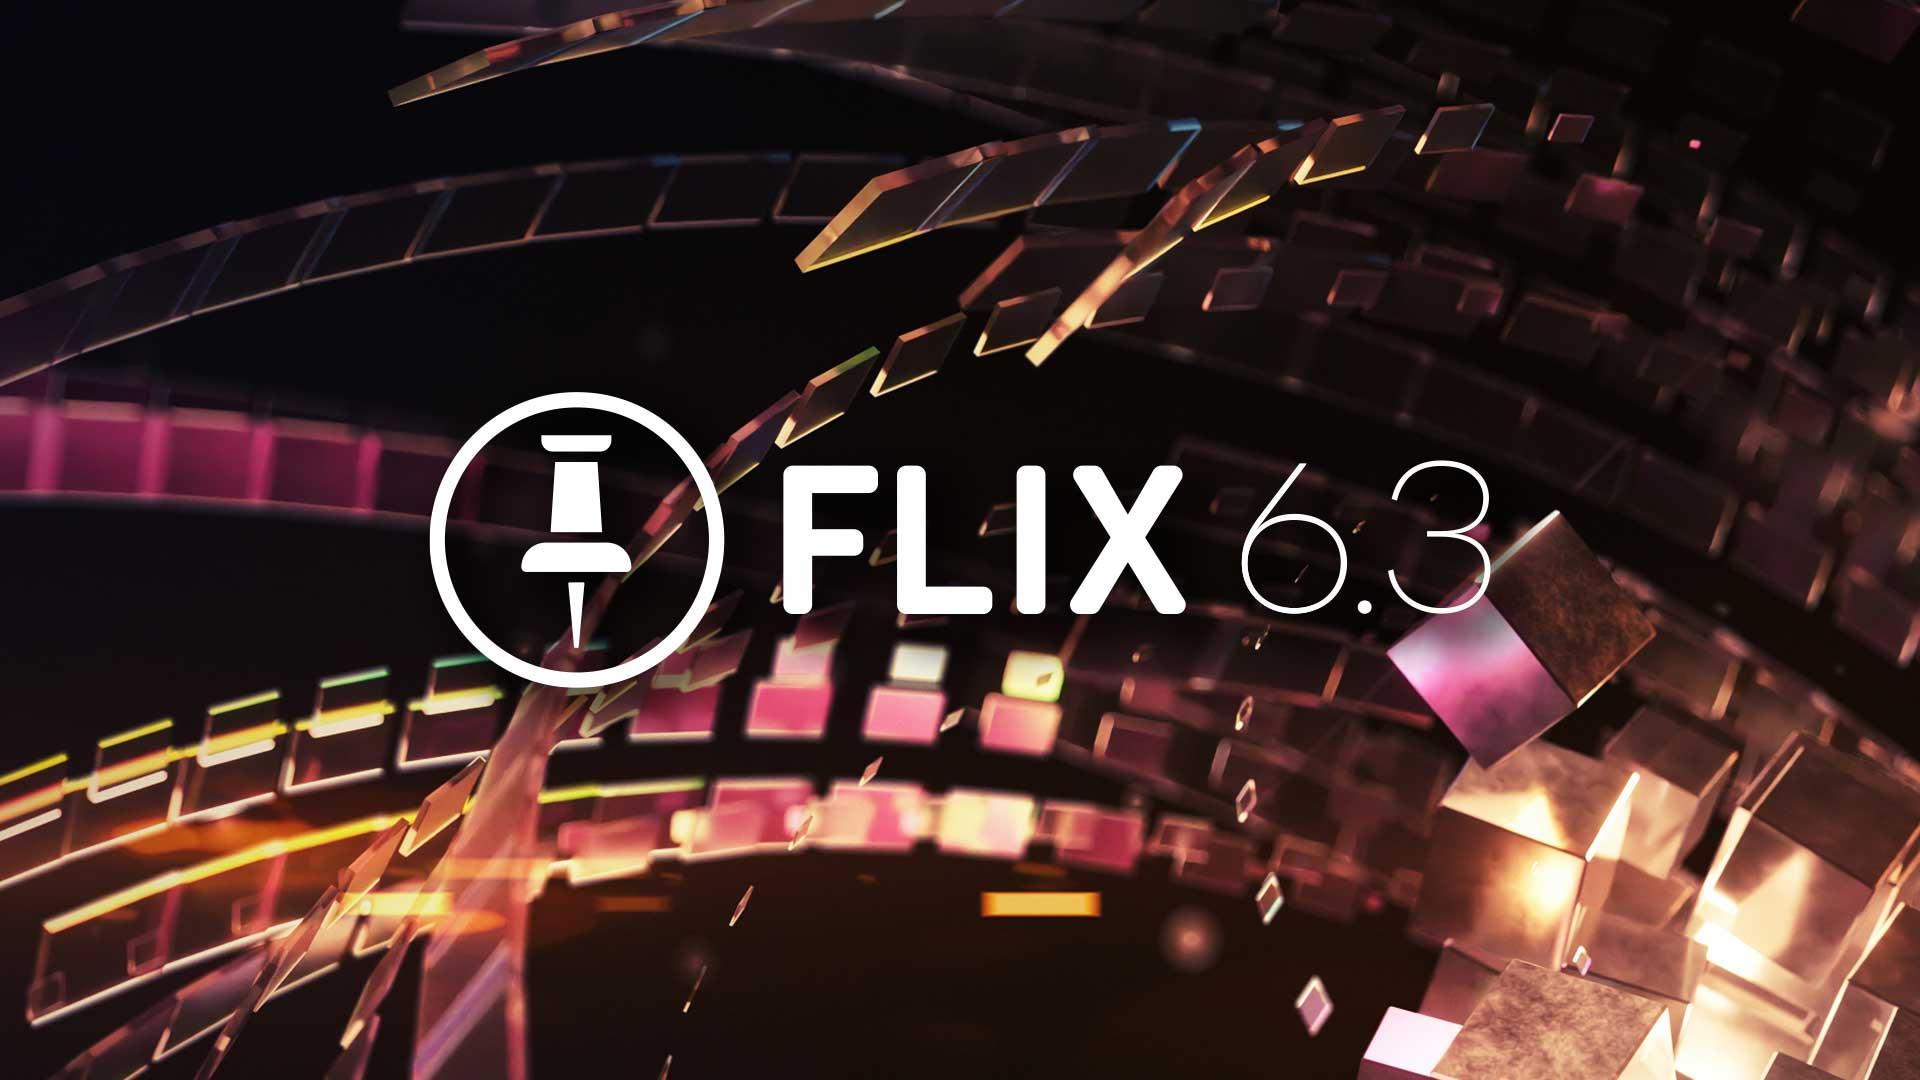 Flix 6.3